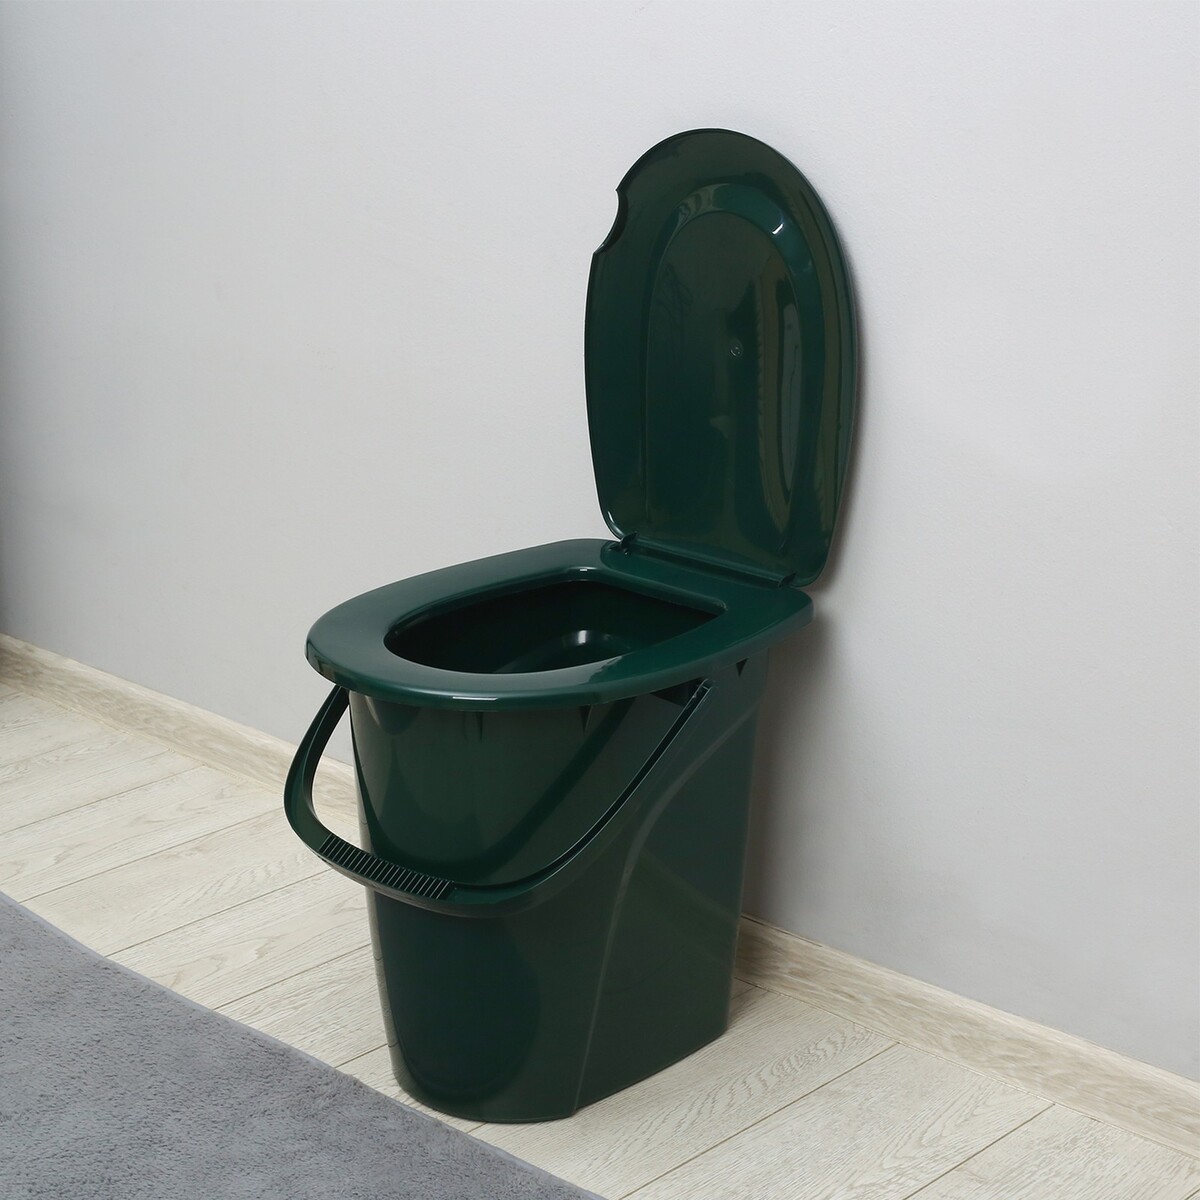 Ведро-туалет, h = 40 см, 24 л, съемный стульчак, зеленое